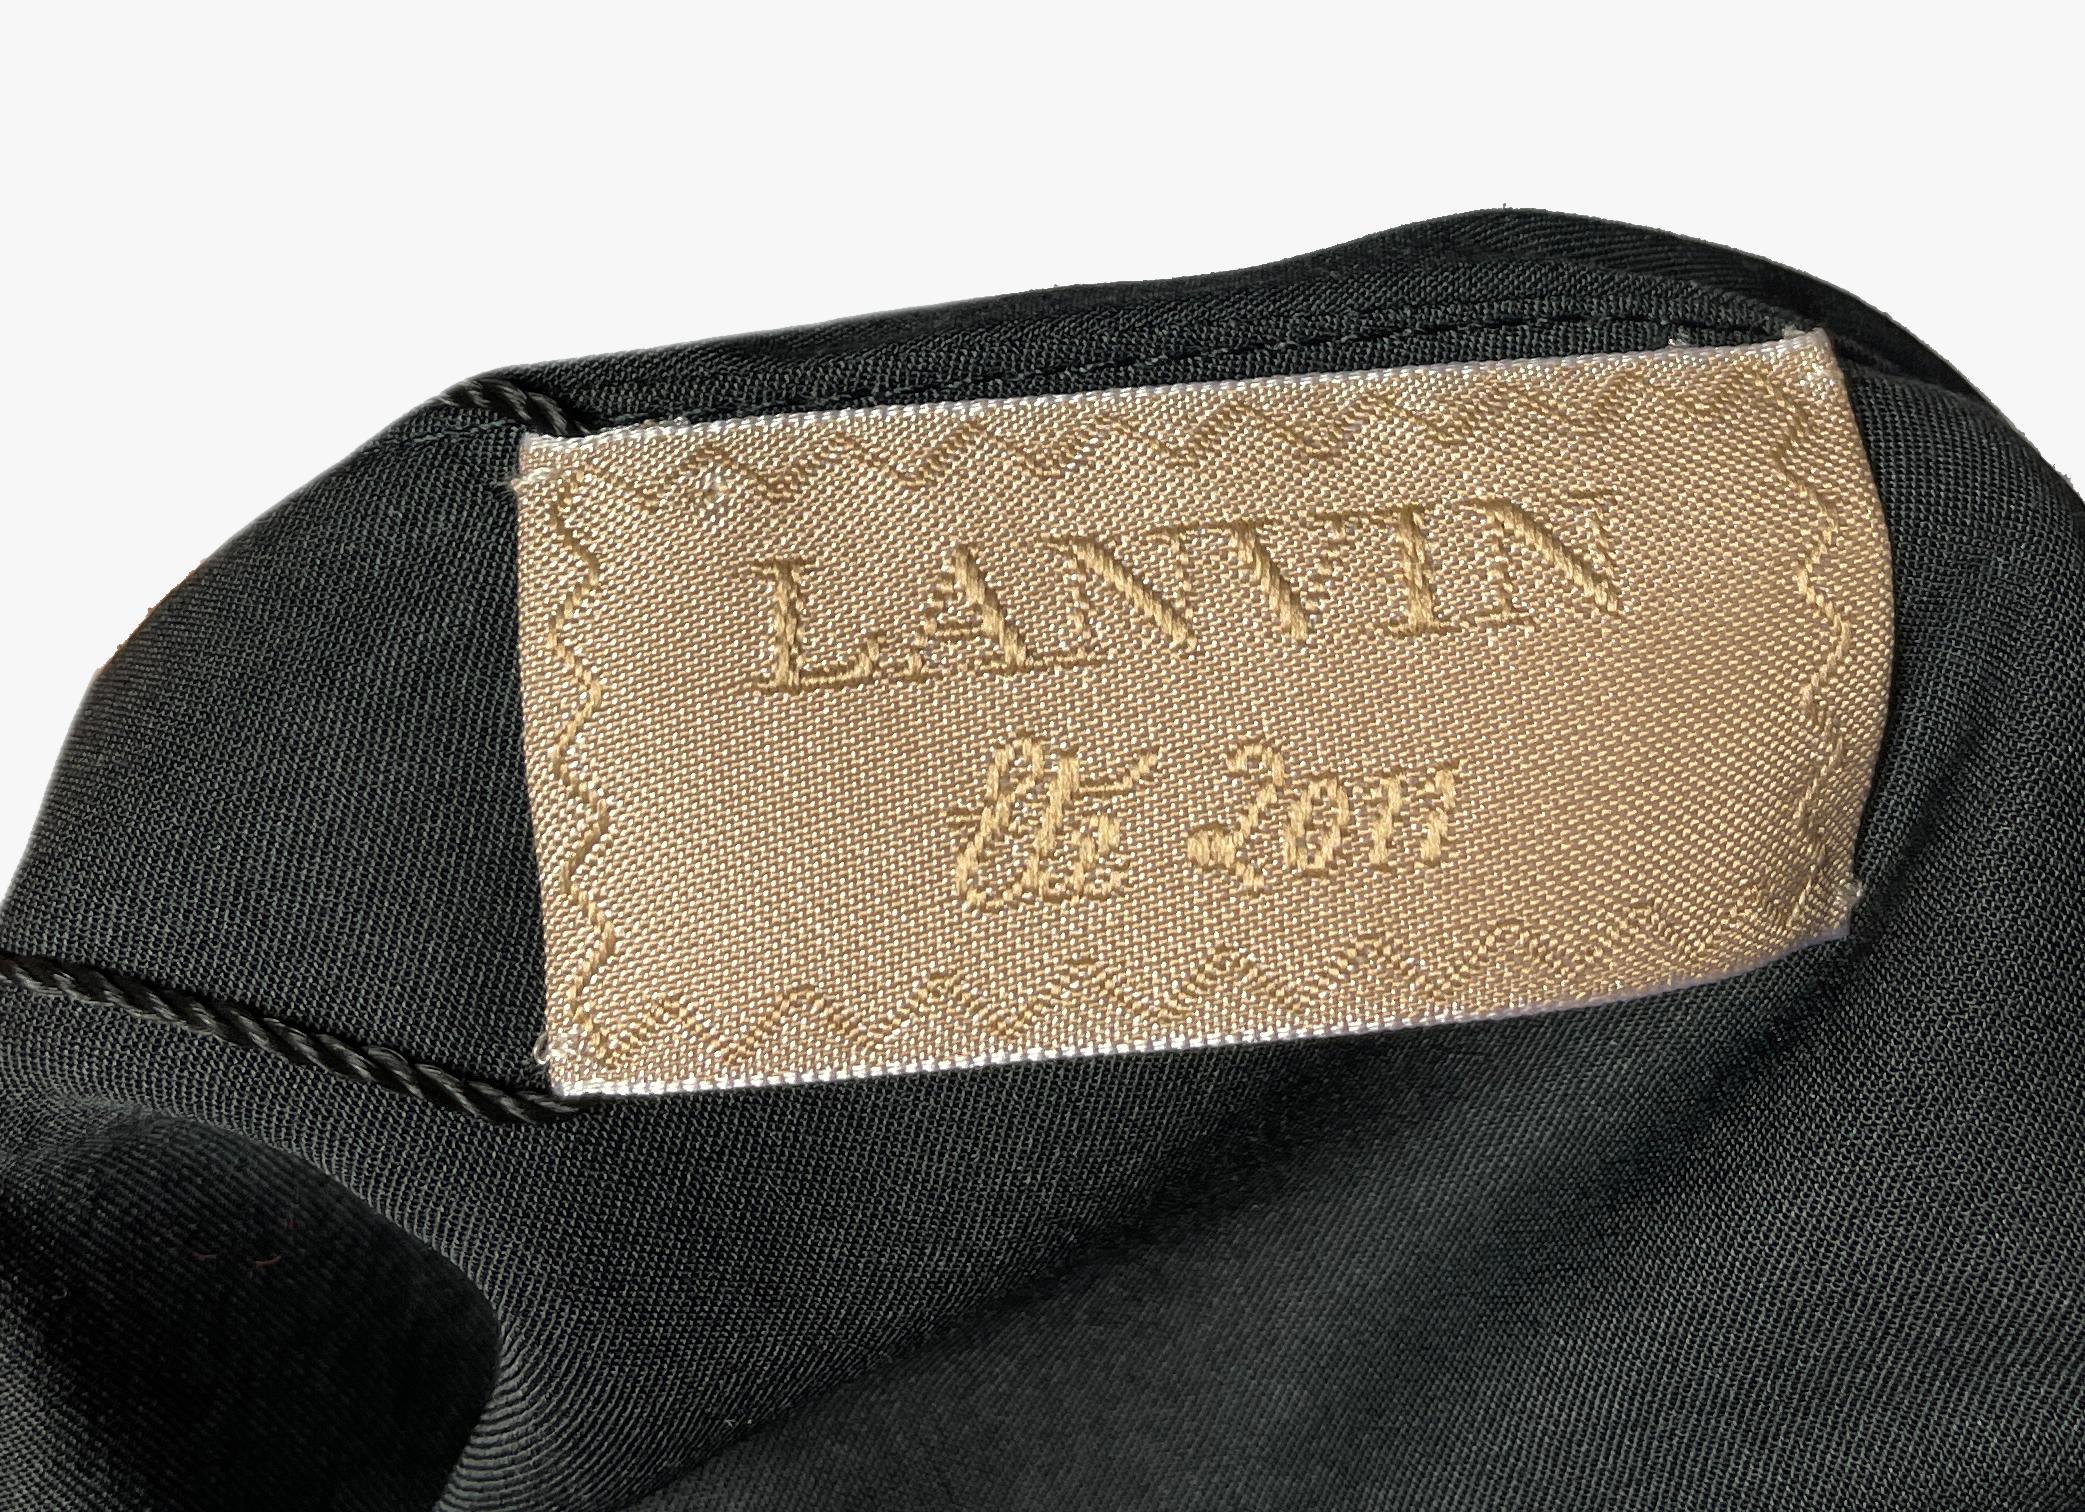 Lanvin One-shoulder Dress, 2011 For Sale 2